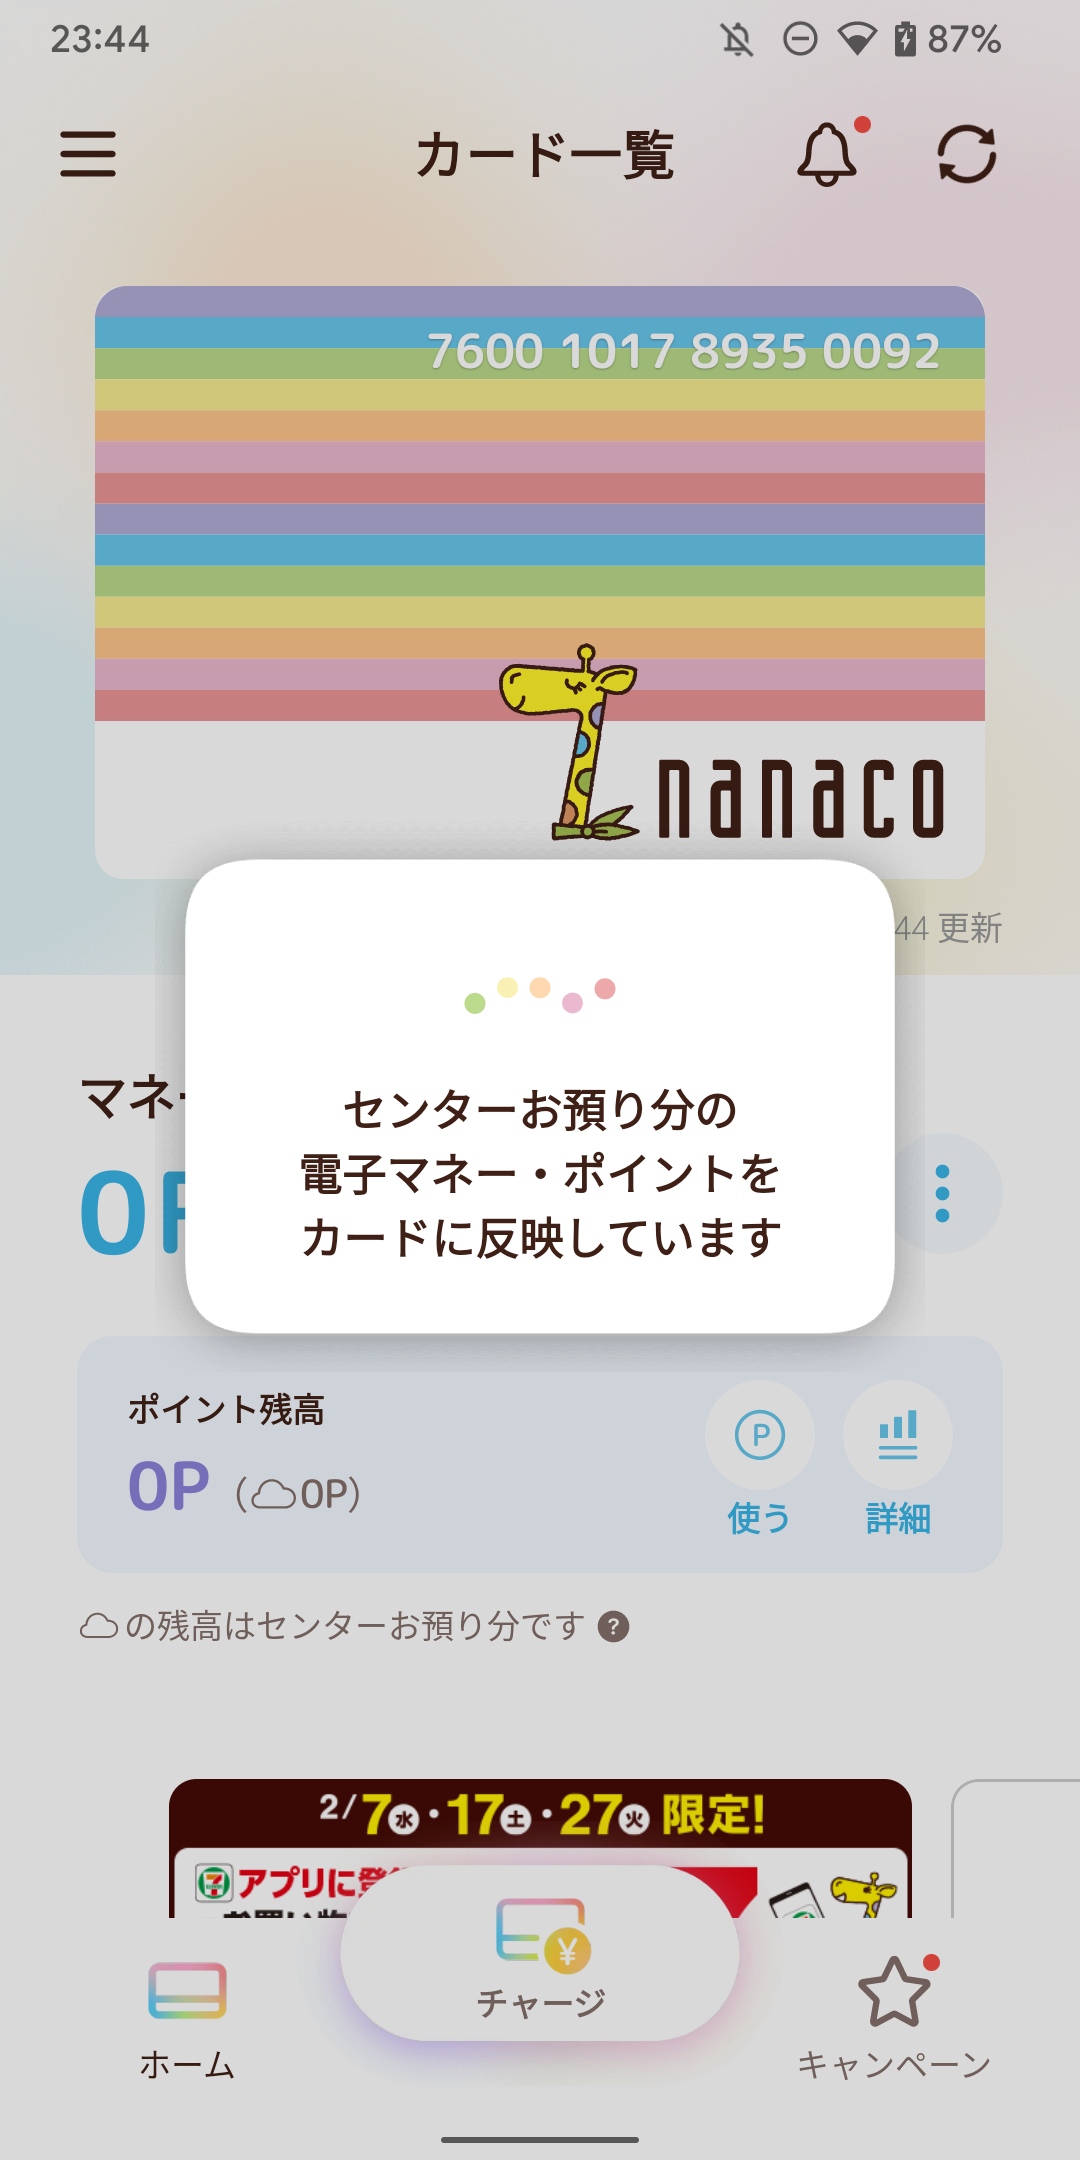 nanaco center to card